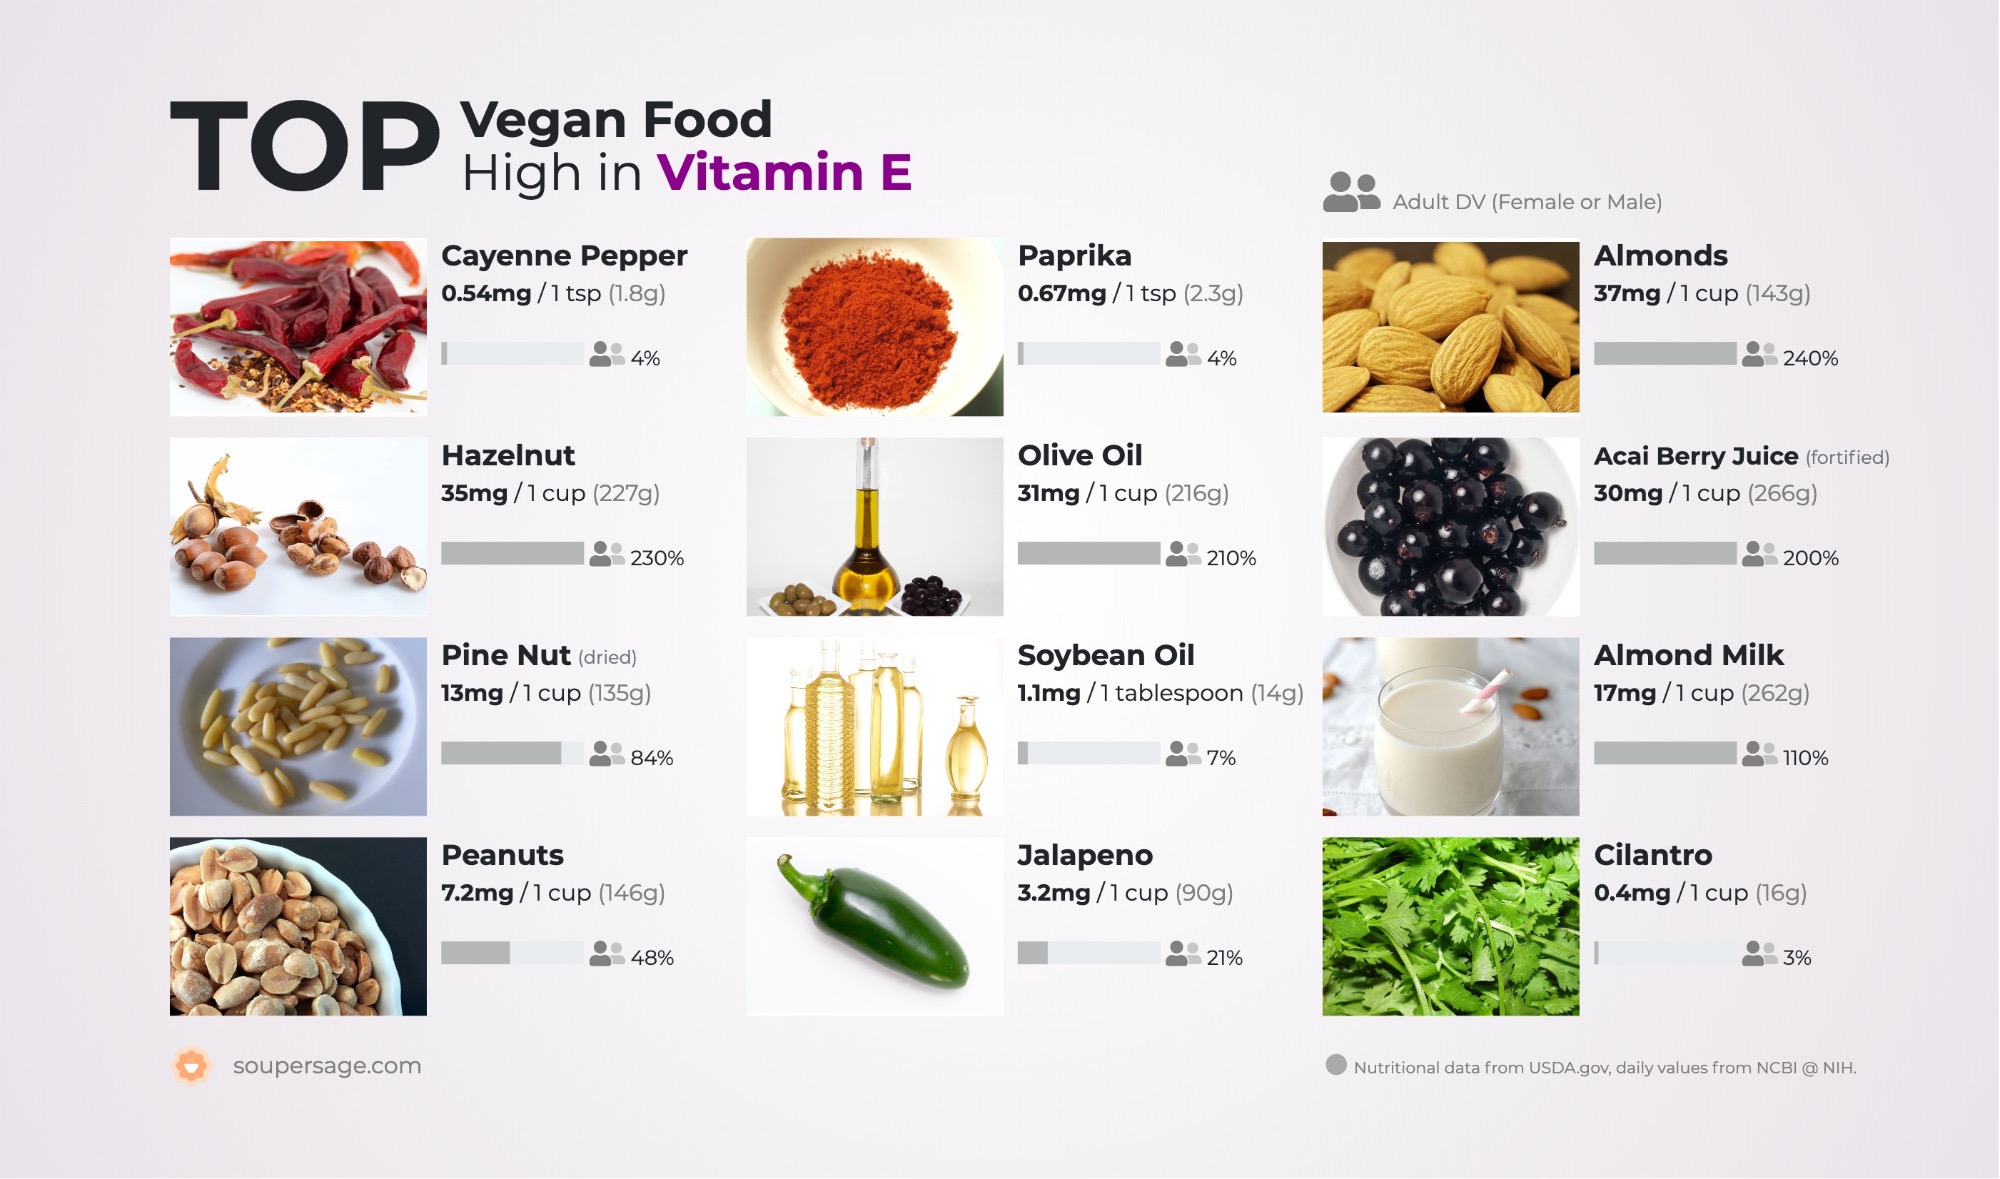 Remission Modtagelig for Ende Top Vegan Food High in Vitamin E